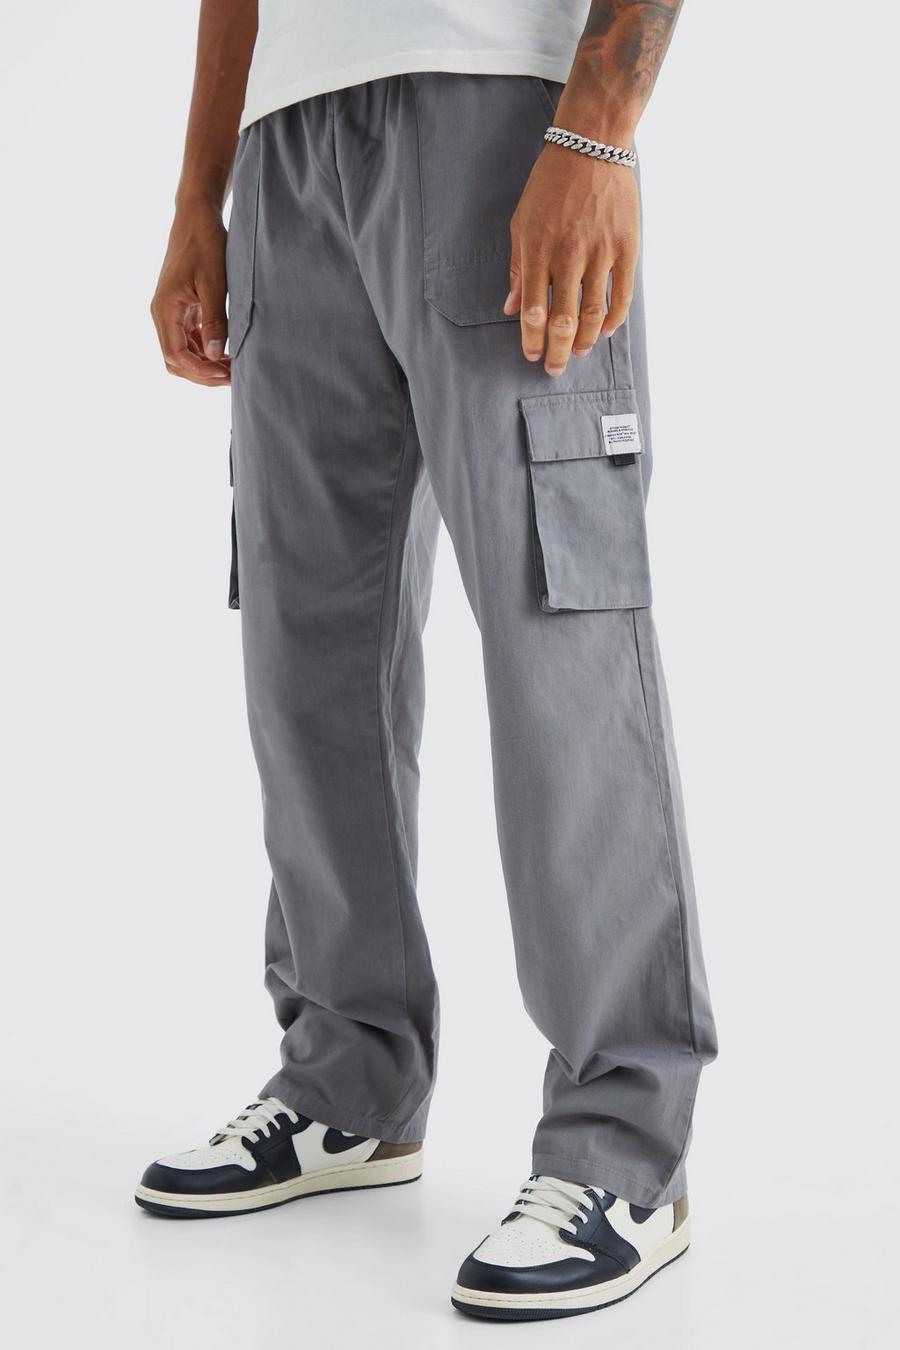 Pantalón deportivo Tall cargo holgado con cintura elástica y hebilla, Slate